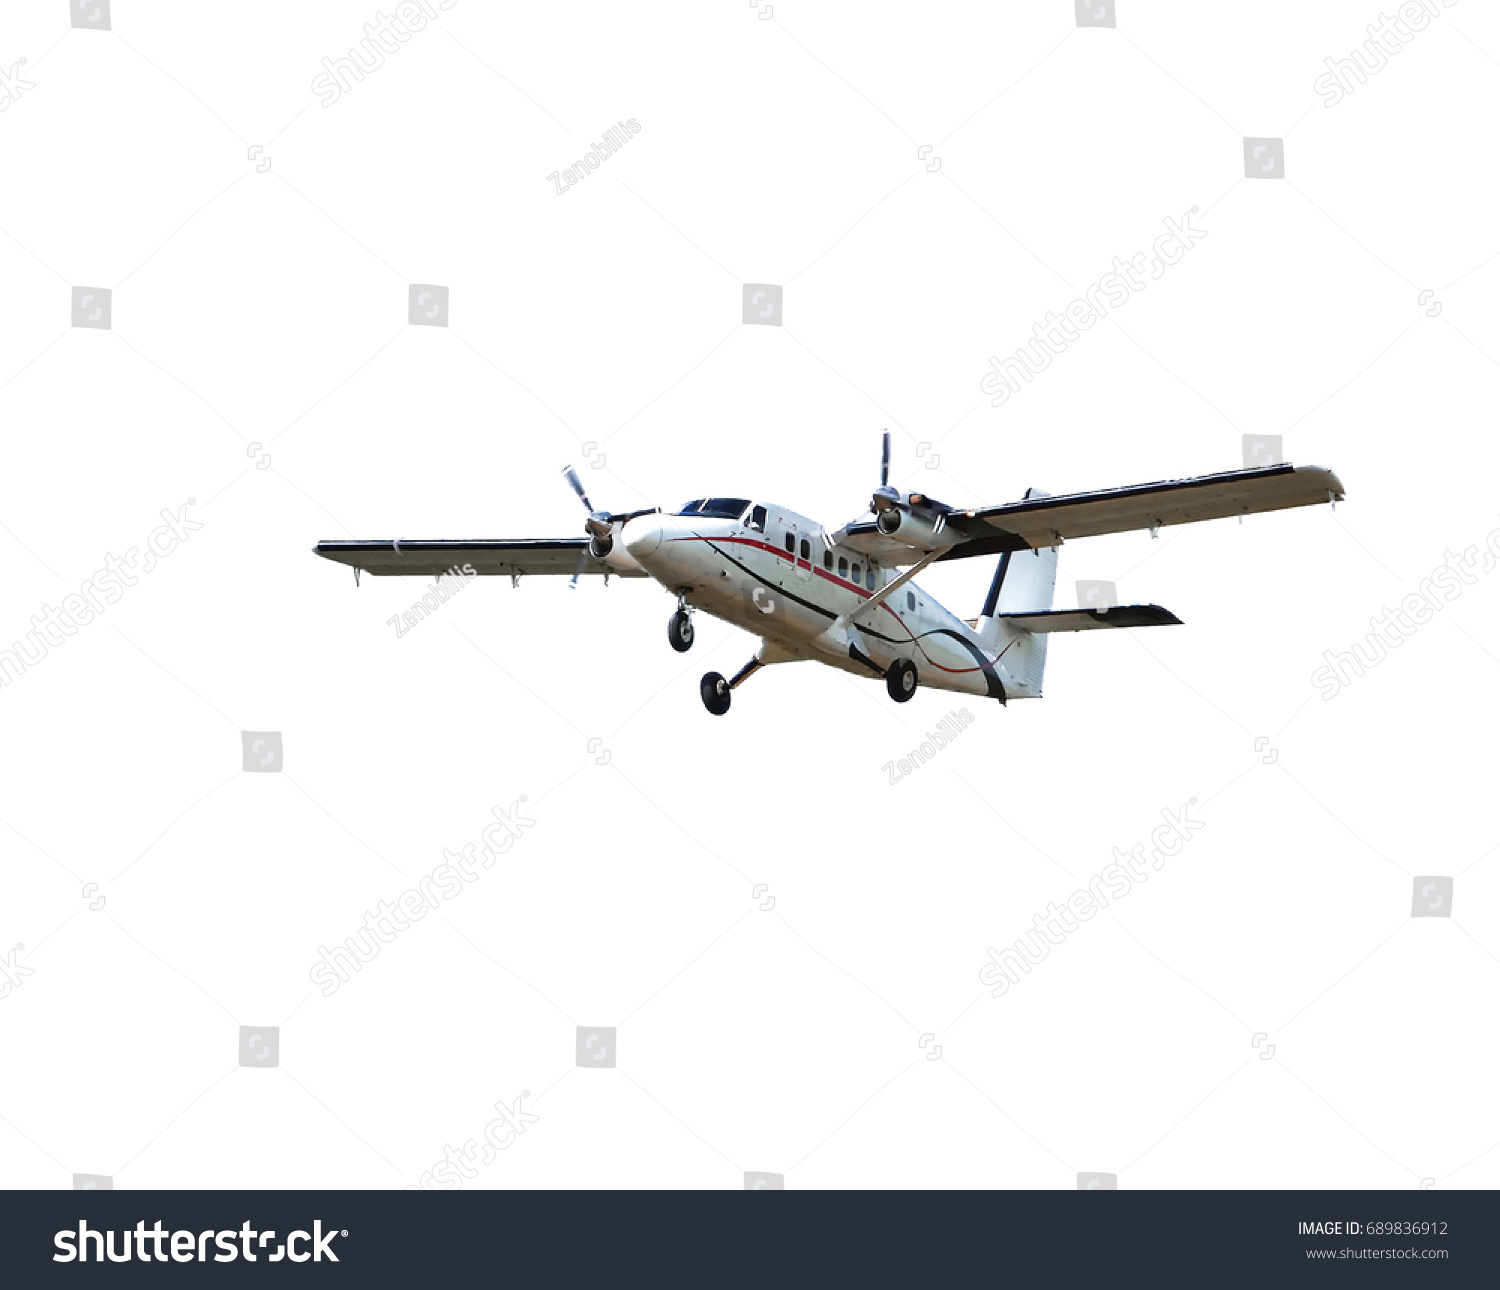 Flying small passenger propeller plane  isolated on white background         #689836912